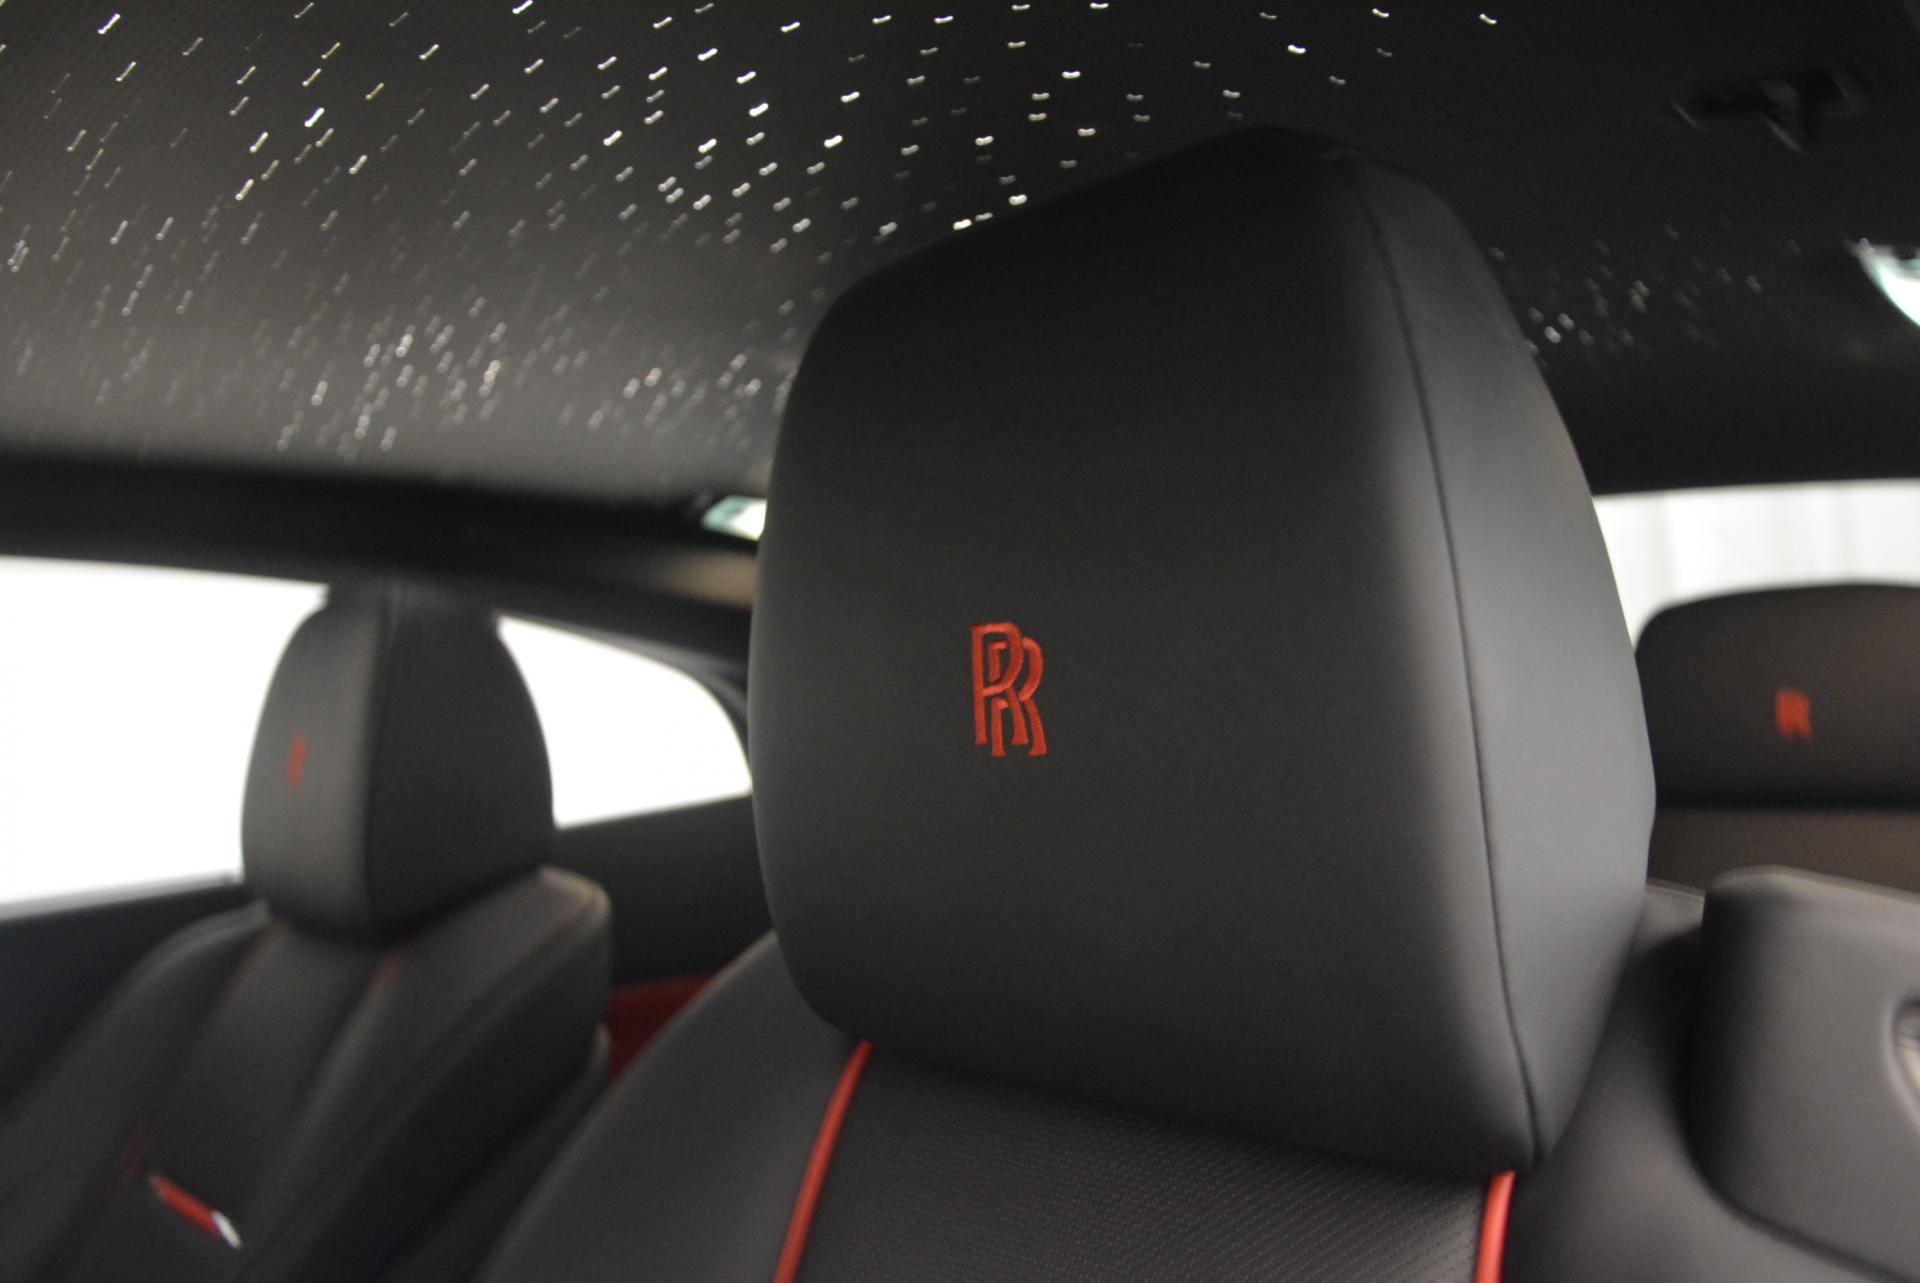 New 2016 Rolls Royce Wraith